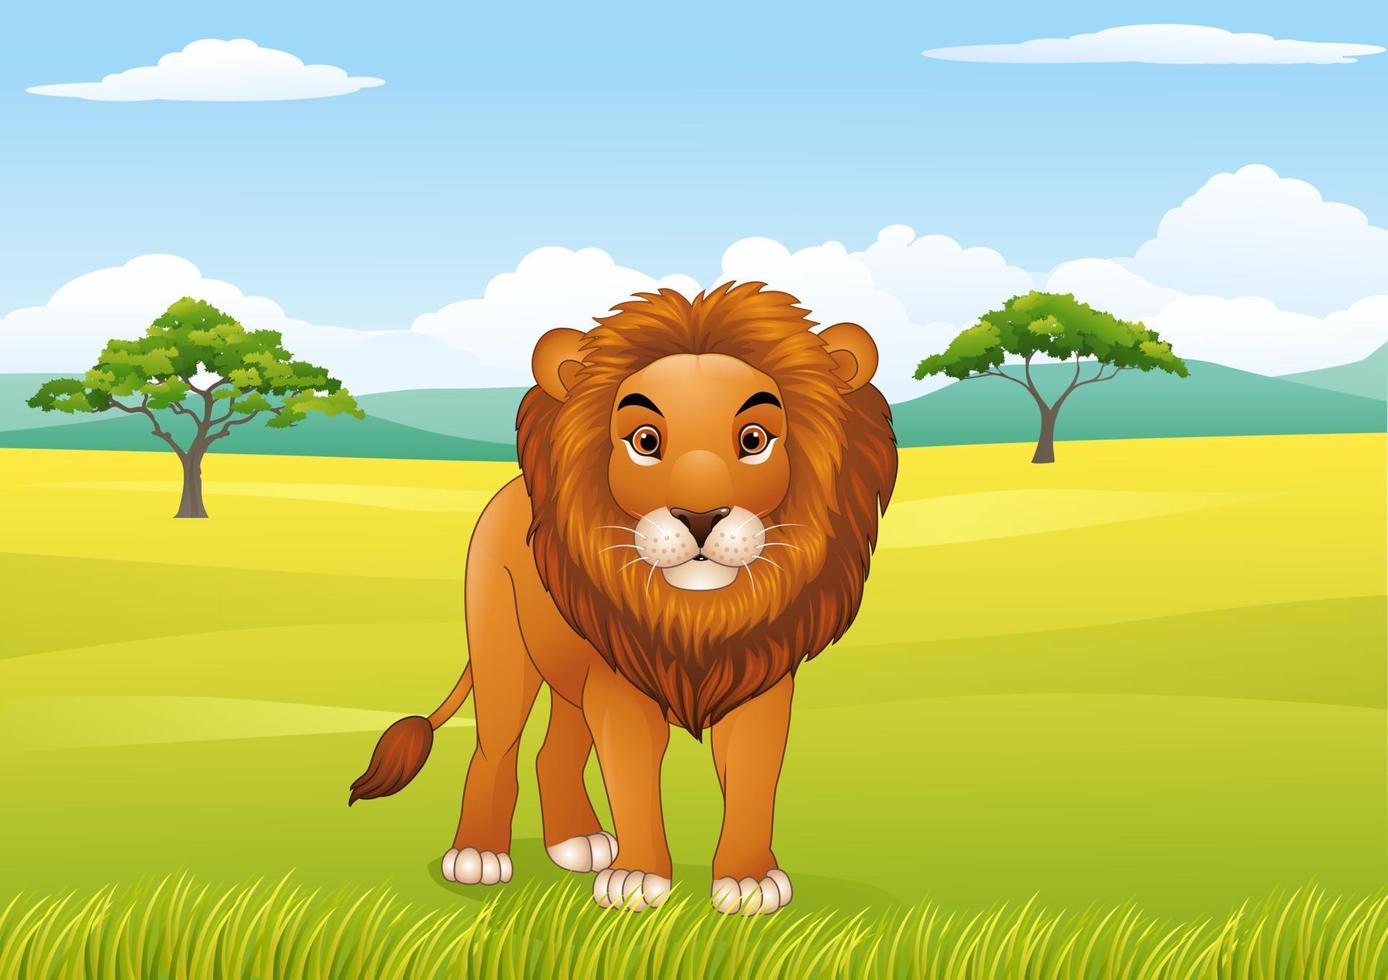 tecknade lejon med afrikansk landskap bakgrund vektor